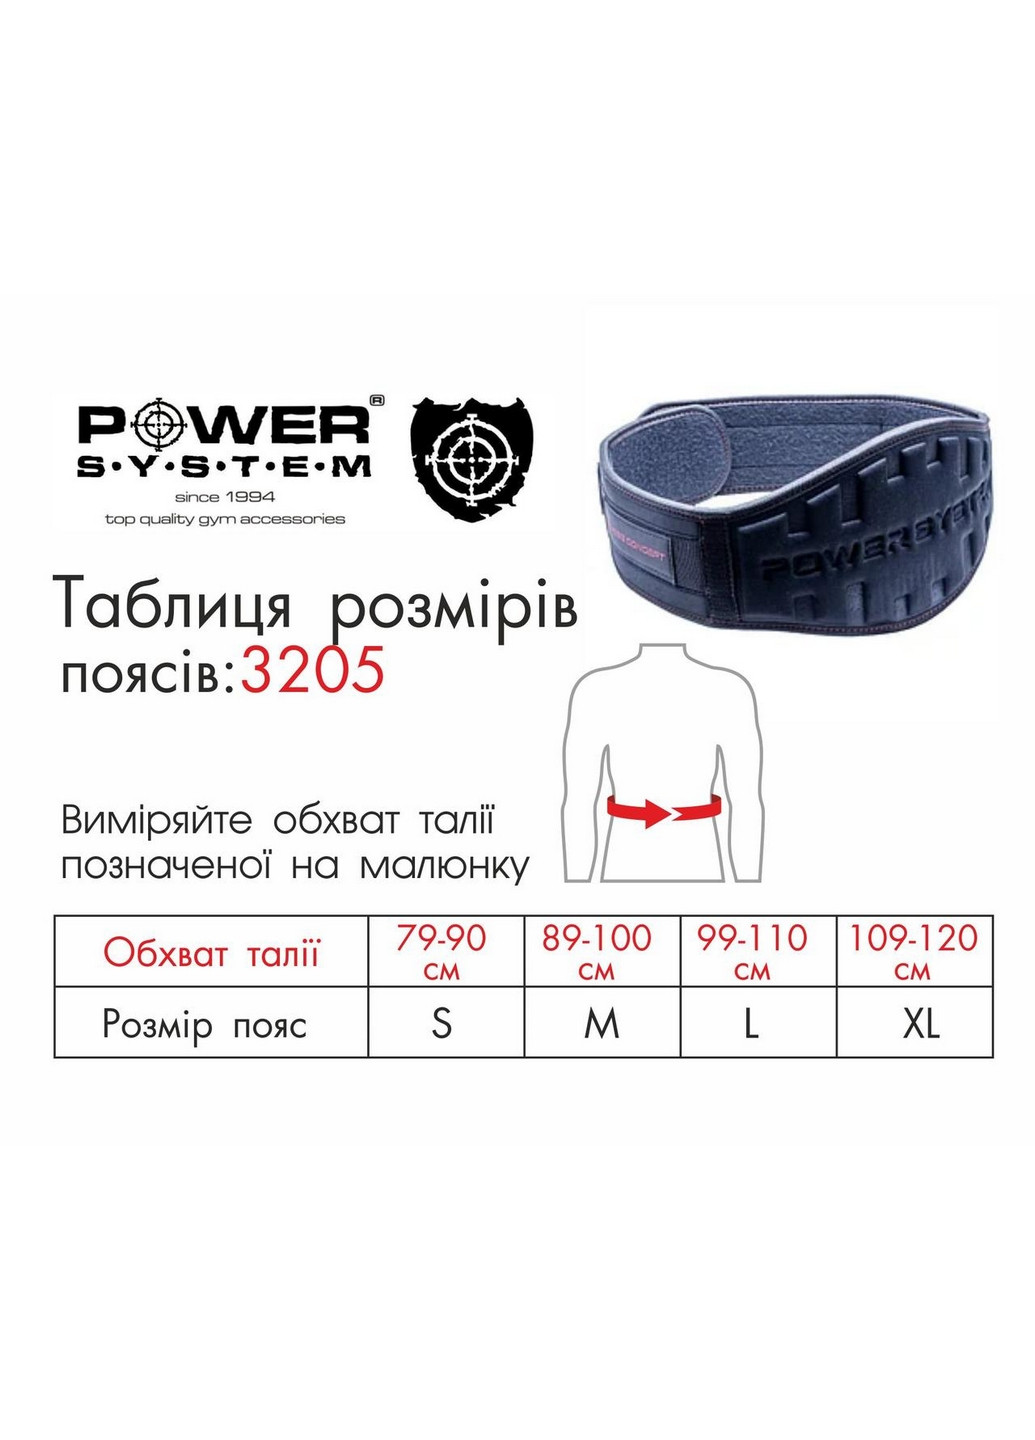 Пояс для тяжелой атлетики L Power System (260499591)